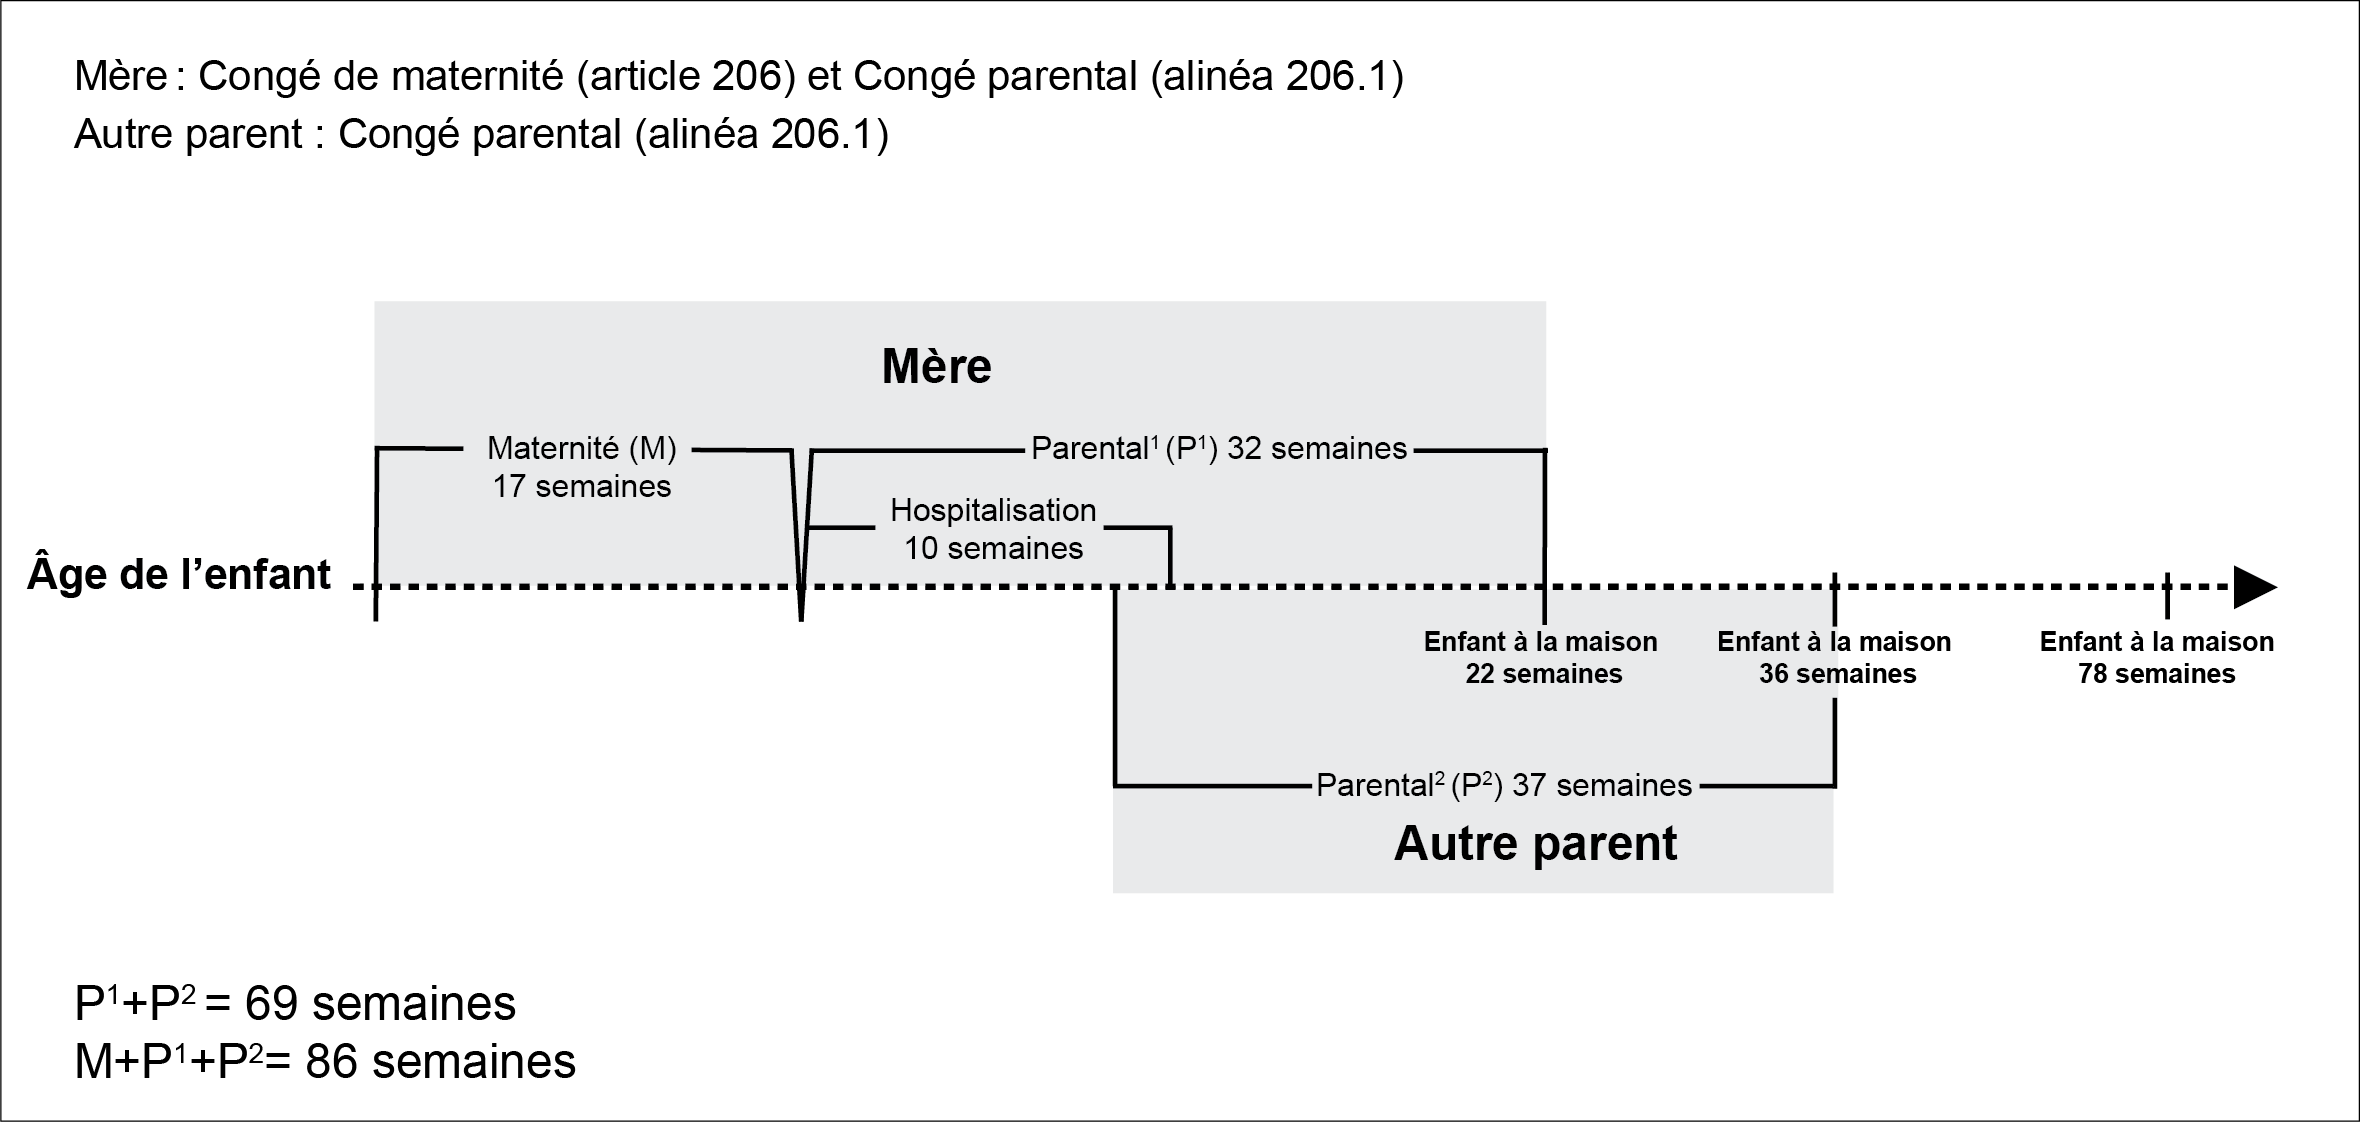 Graphgique de Deuxième exemple de la période combinée du congé de maternité et du congé parental de la mère ainsi que le congé parental de l'autre parent : la description suit